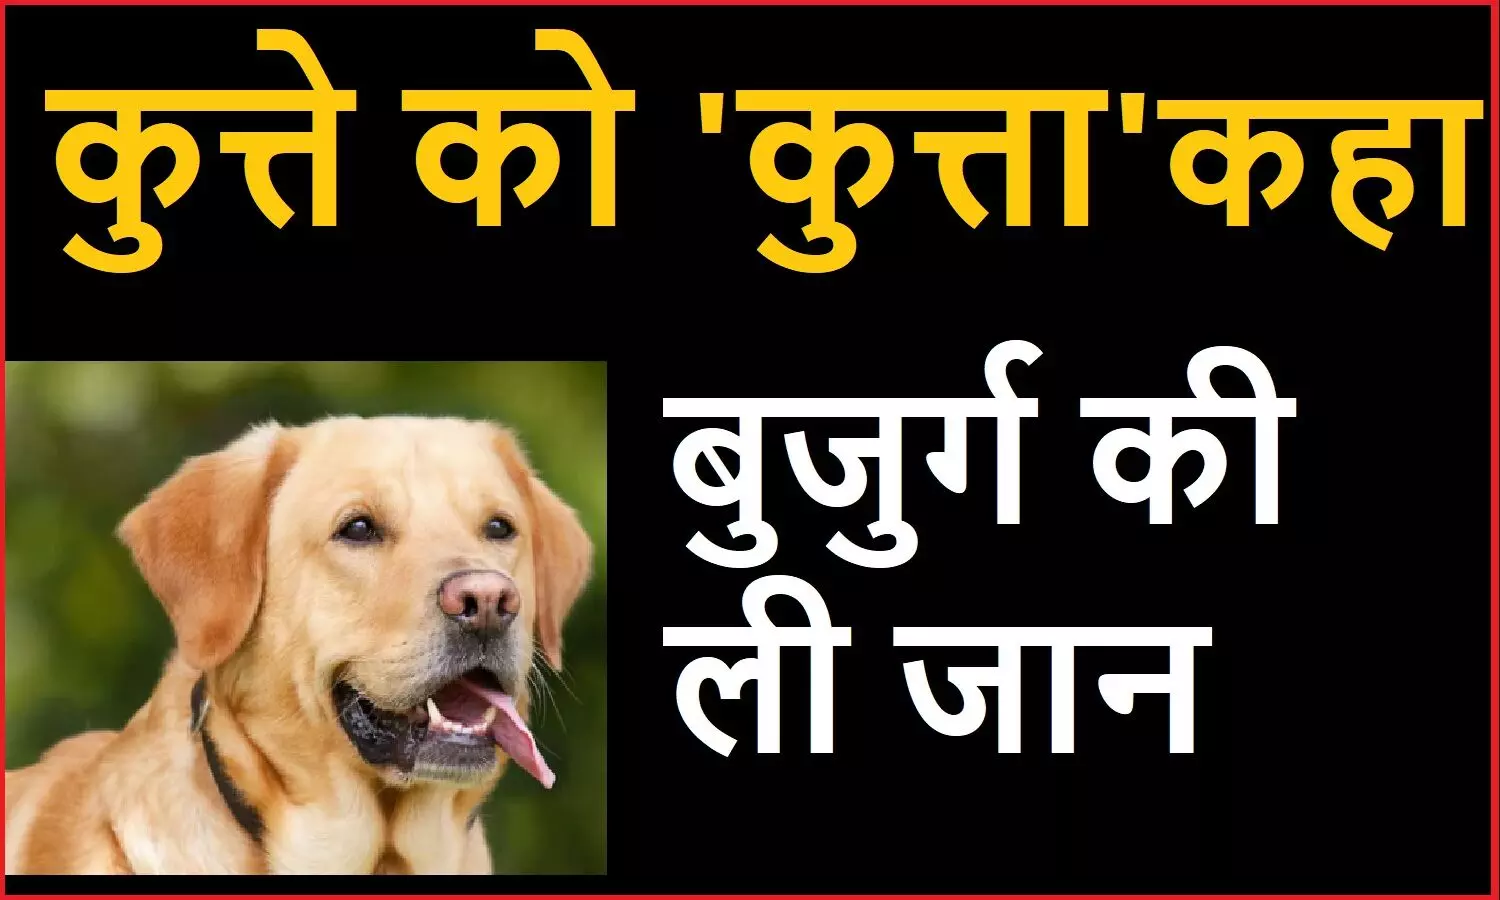 पड़ोसी बुजुर्ग ने कुत्ते को कुत्ता कह दिया तो युवक ने उतार दिया मौत के घाट, तमिलनाडु के डिंडीगुल की है घटना